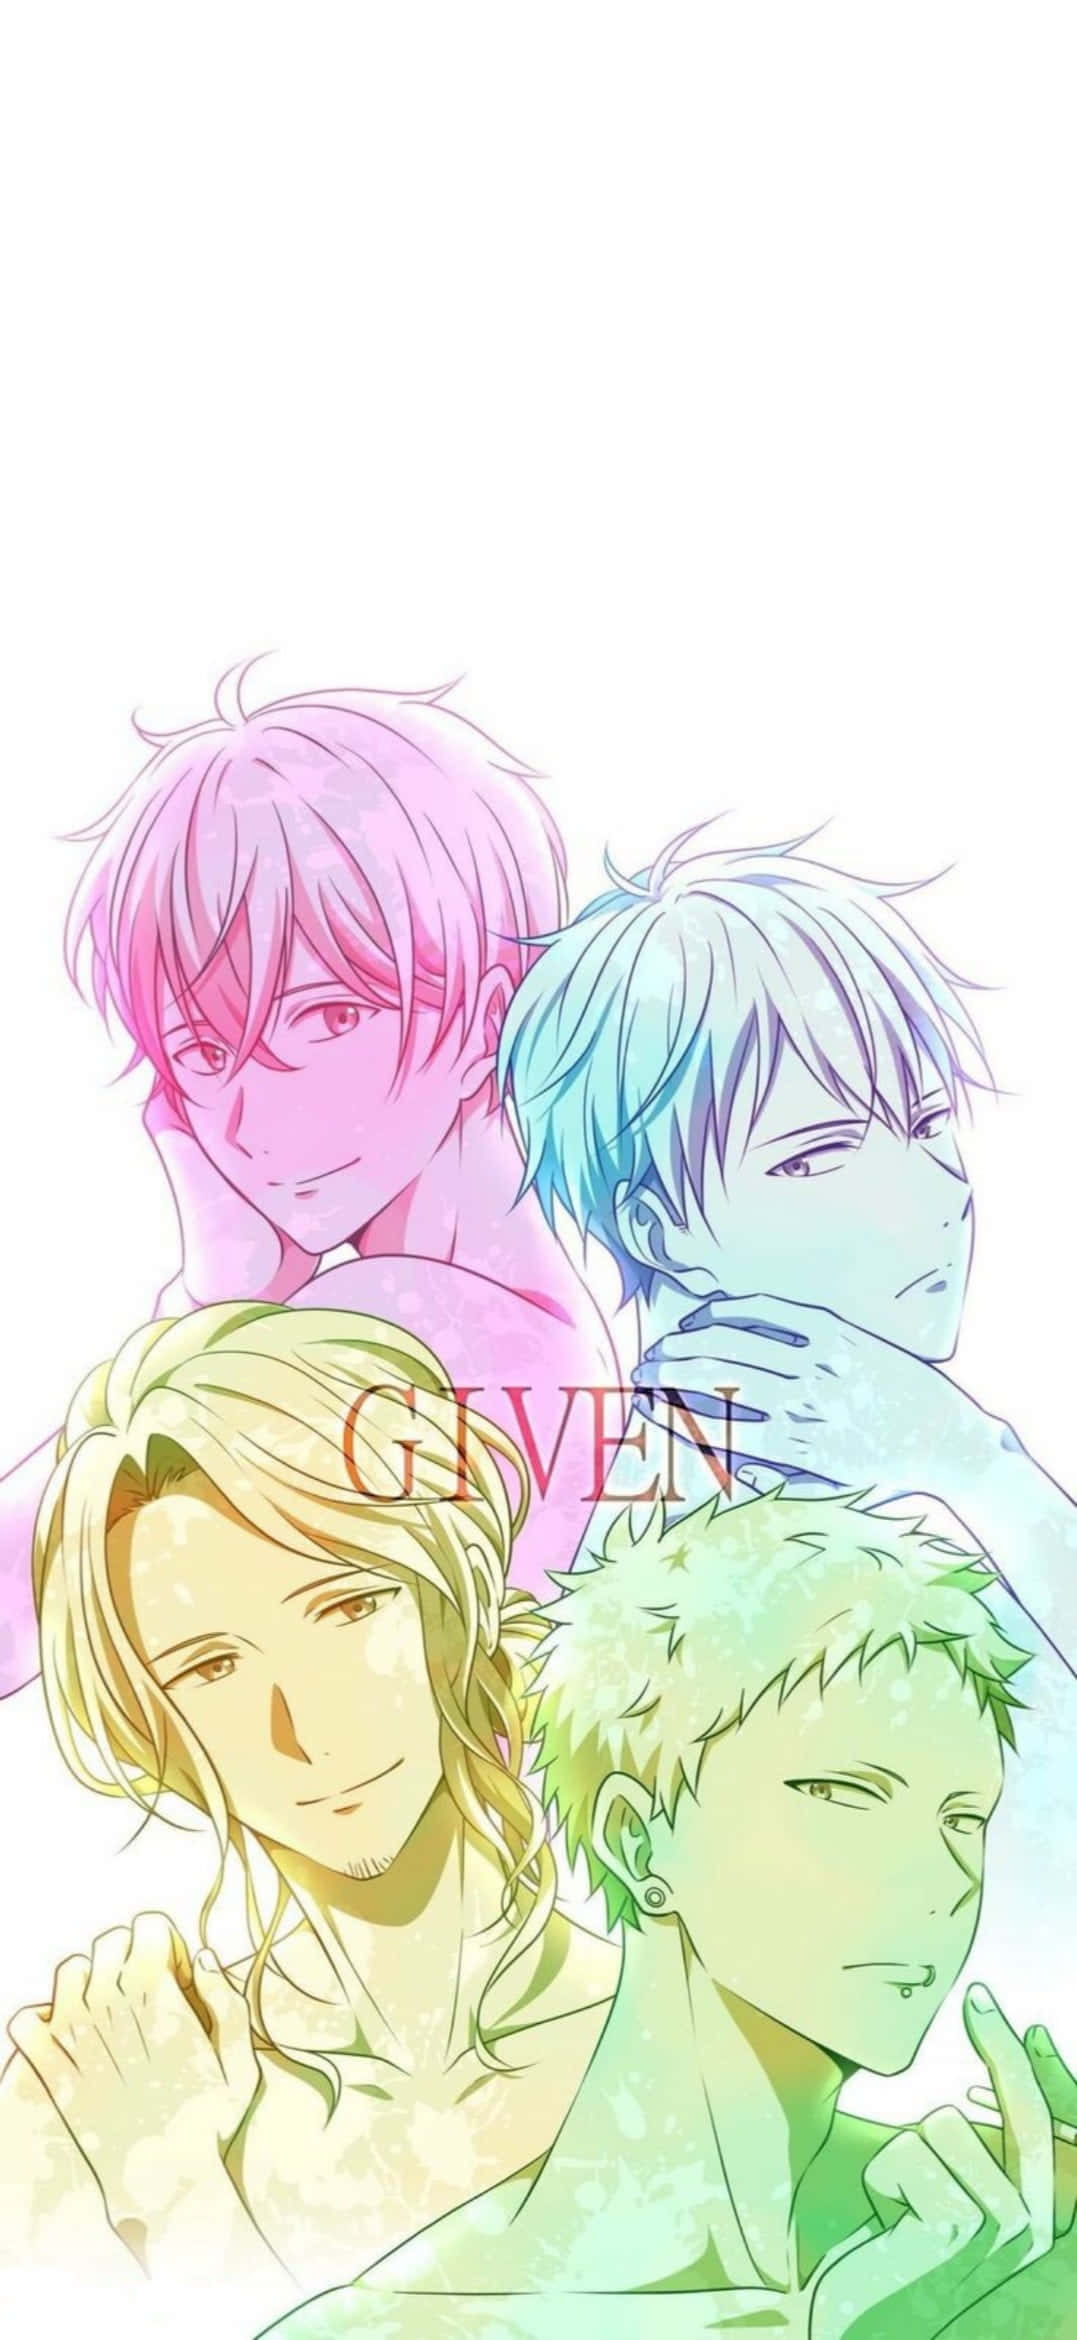 Einegruppe Von Anime-charakteren Mit Verschiedenen Haarfarben